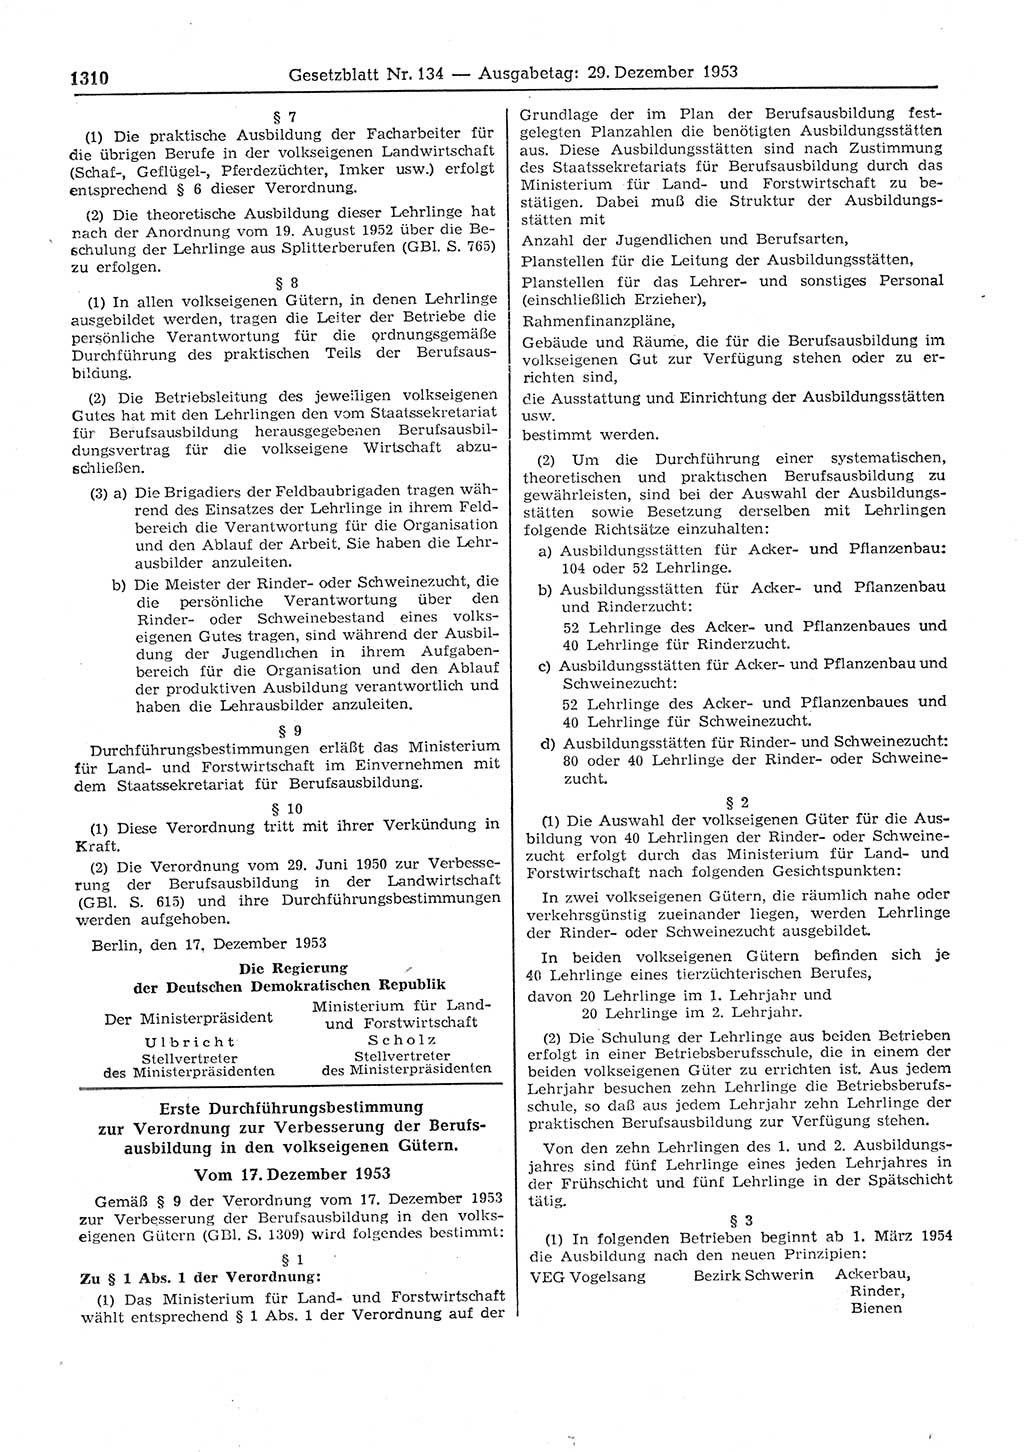 Gesetzblatt (GBl.) der Deutschen Demokratischen Republik (DDR) 1953, Seite 1310 (GBl. DDR 1953, S. 1310)